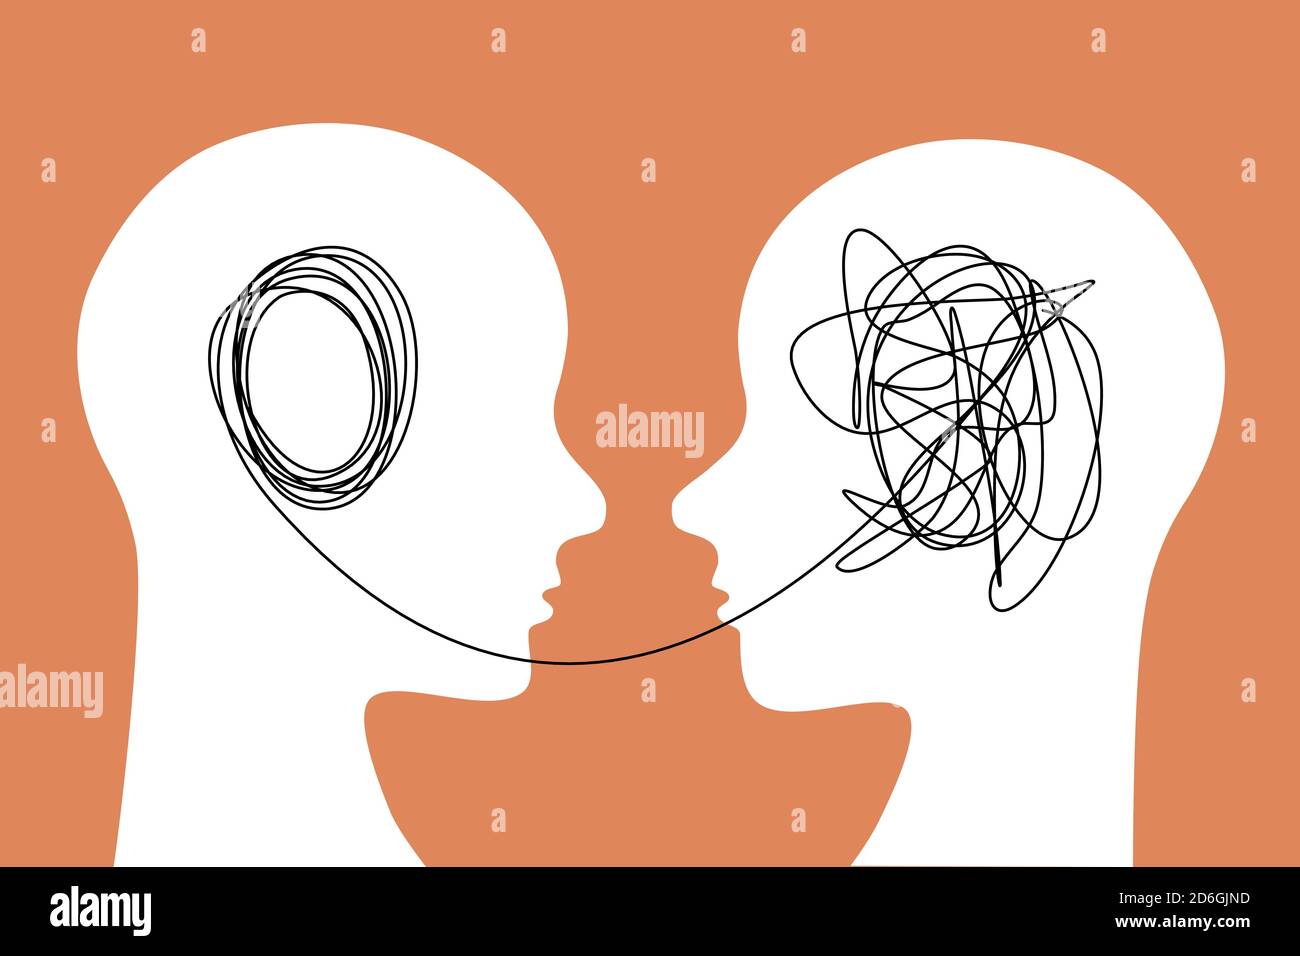 Illustrazione del concetto del processo di apprendimento. Una persona trasmette informazioni a un'altra persona. Icona del contorno piatto della testa umana. Illustrazione Vettoriale